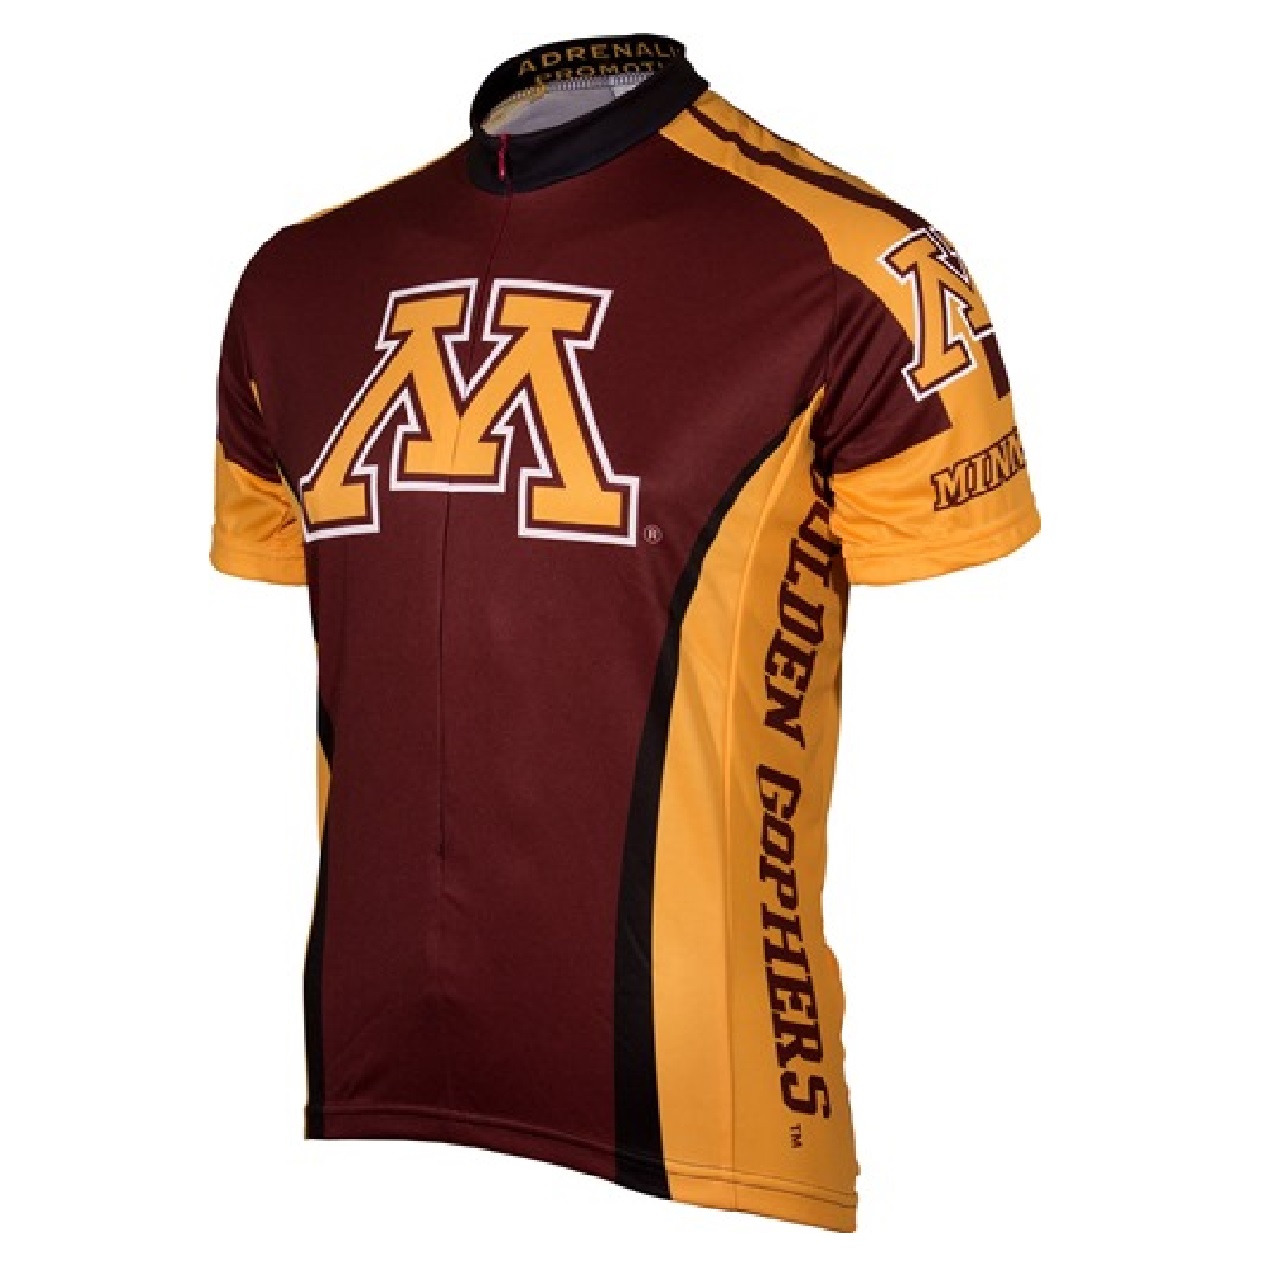 Adrenaline Promo University of Minnesota Golden Gophers College 3/4 zip Men's Cycling Jersey